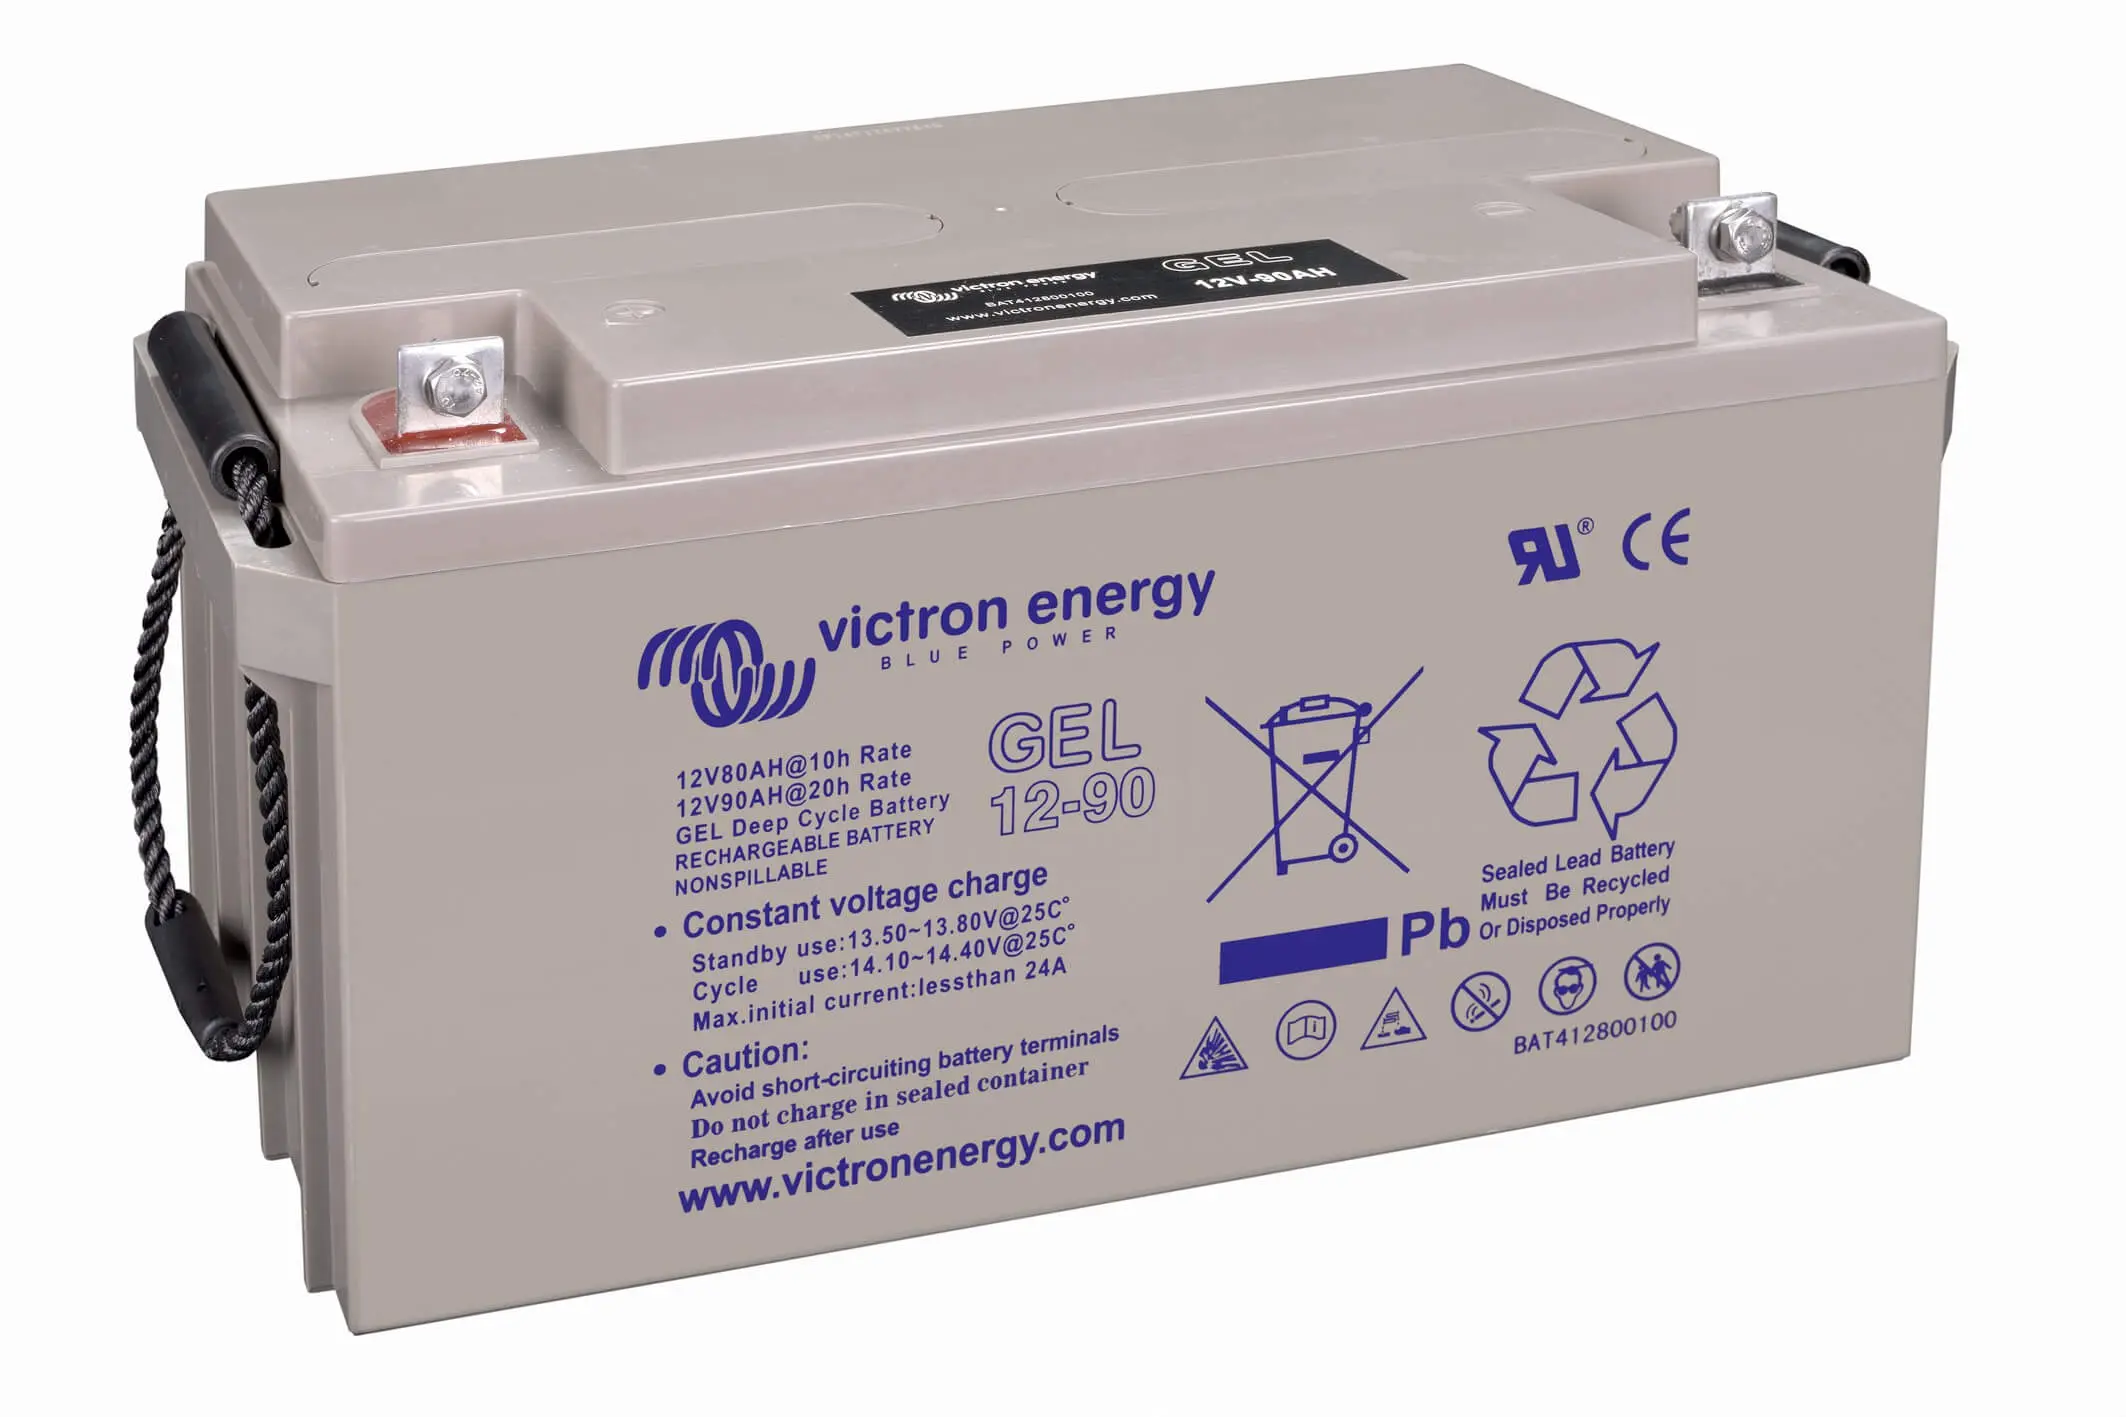 baterias de gel siglas - Qué significa STD y AGM